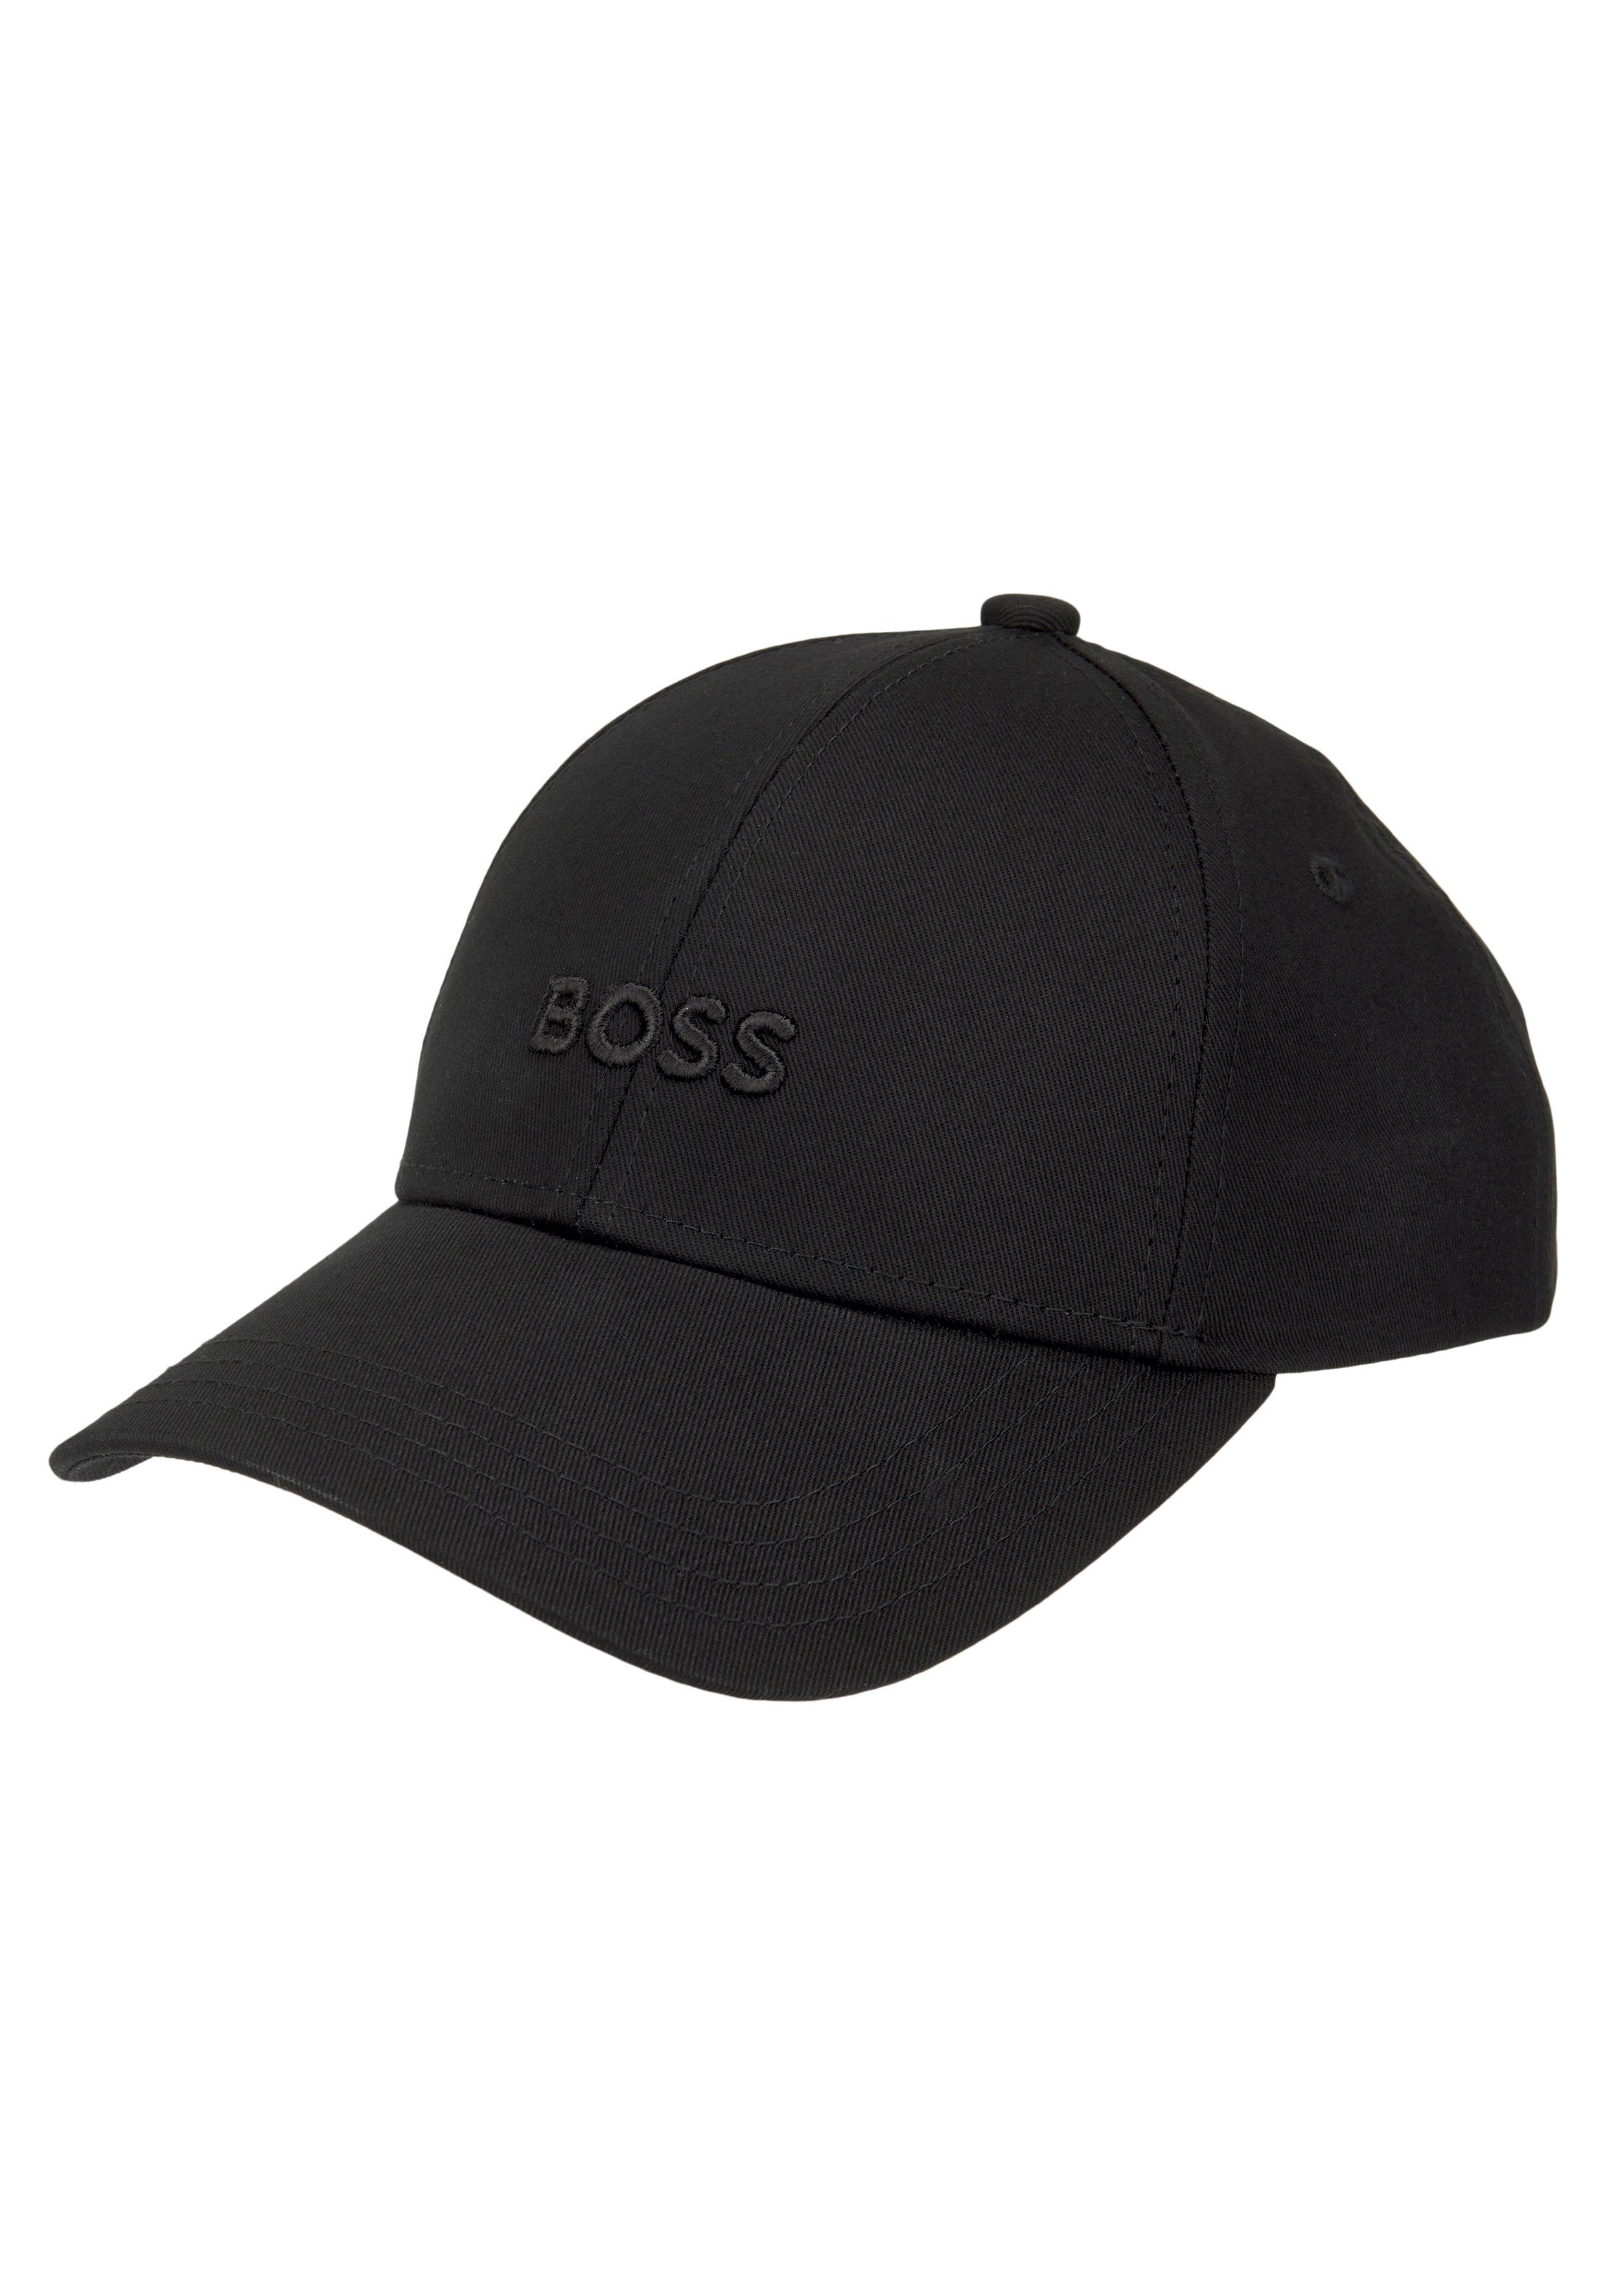 Baseball BOSS BOSS aufgesticktem Cap mit Schriftzug Black Ari